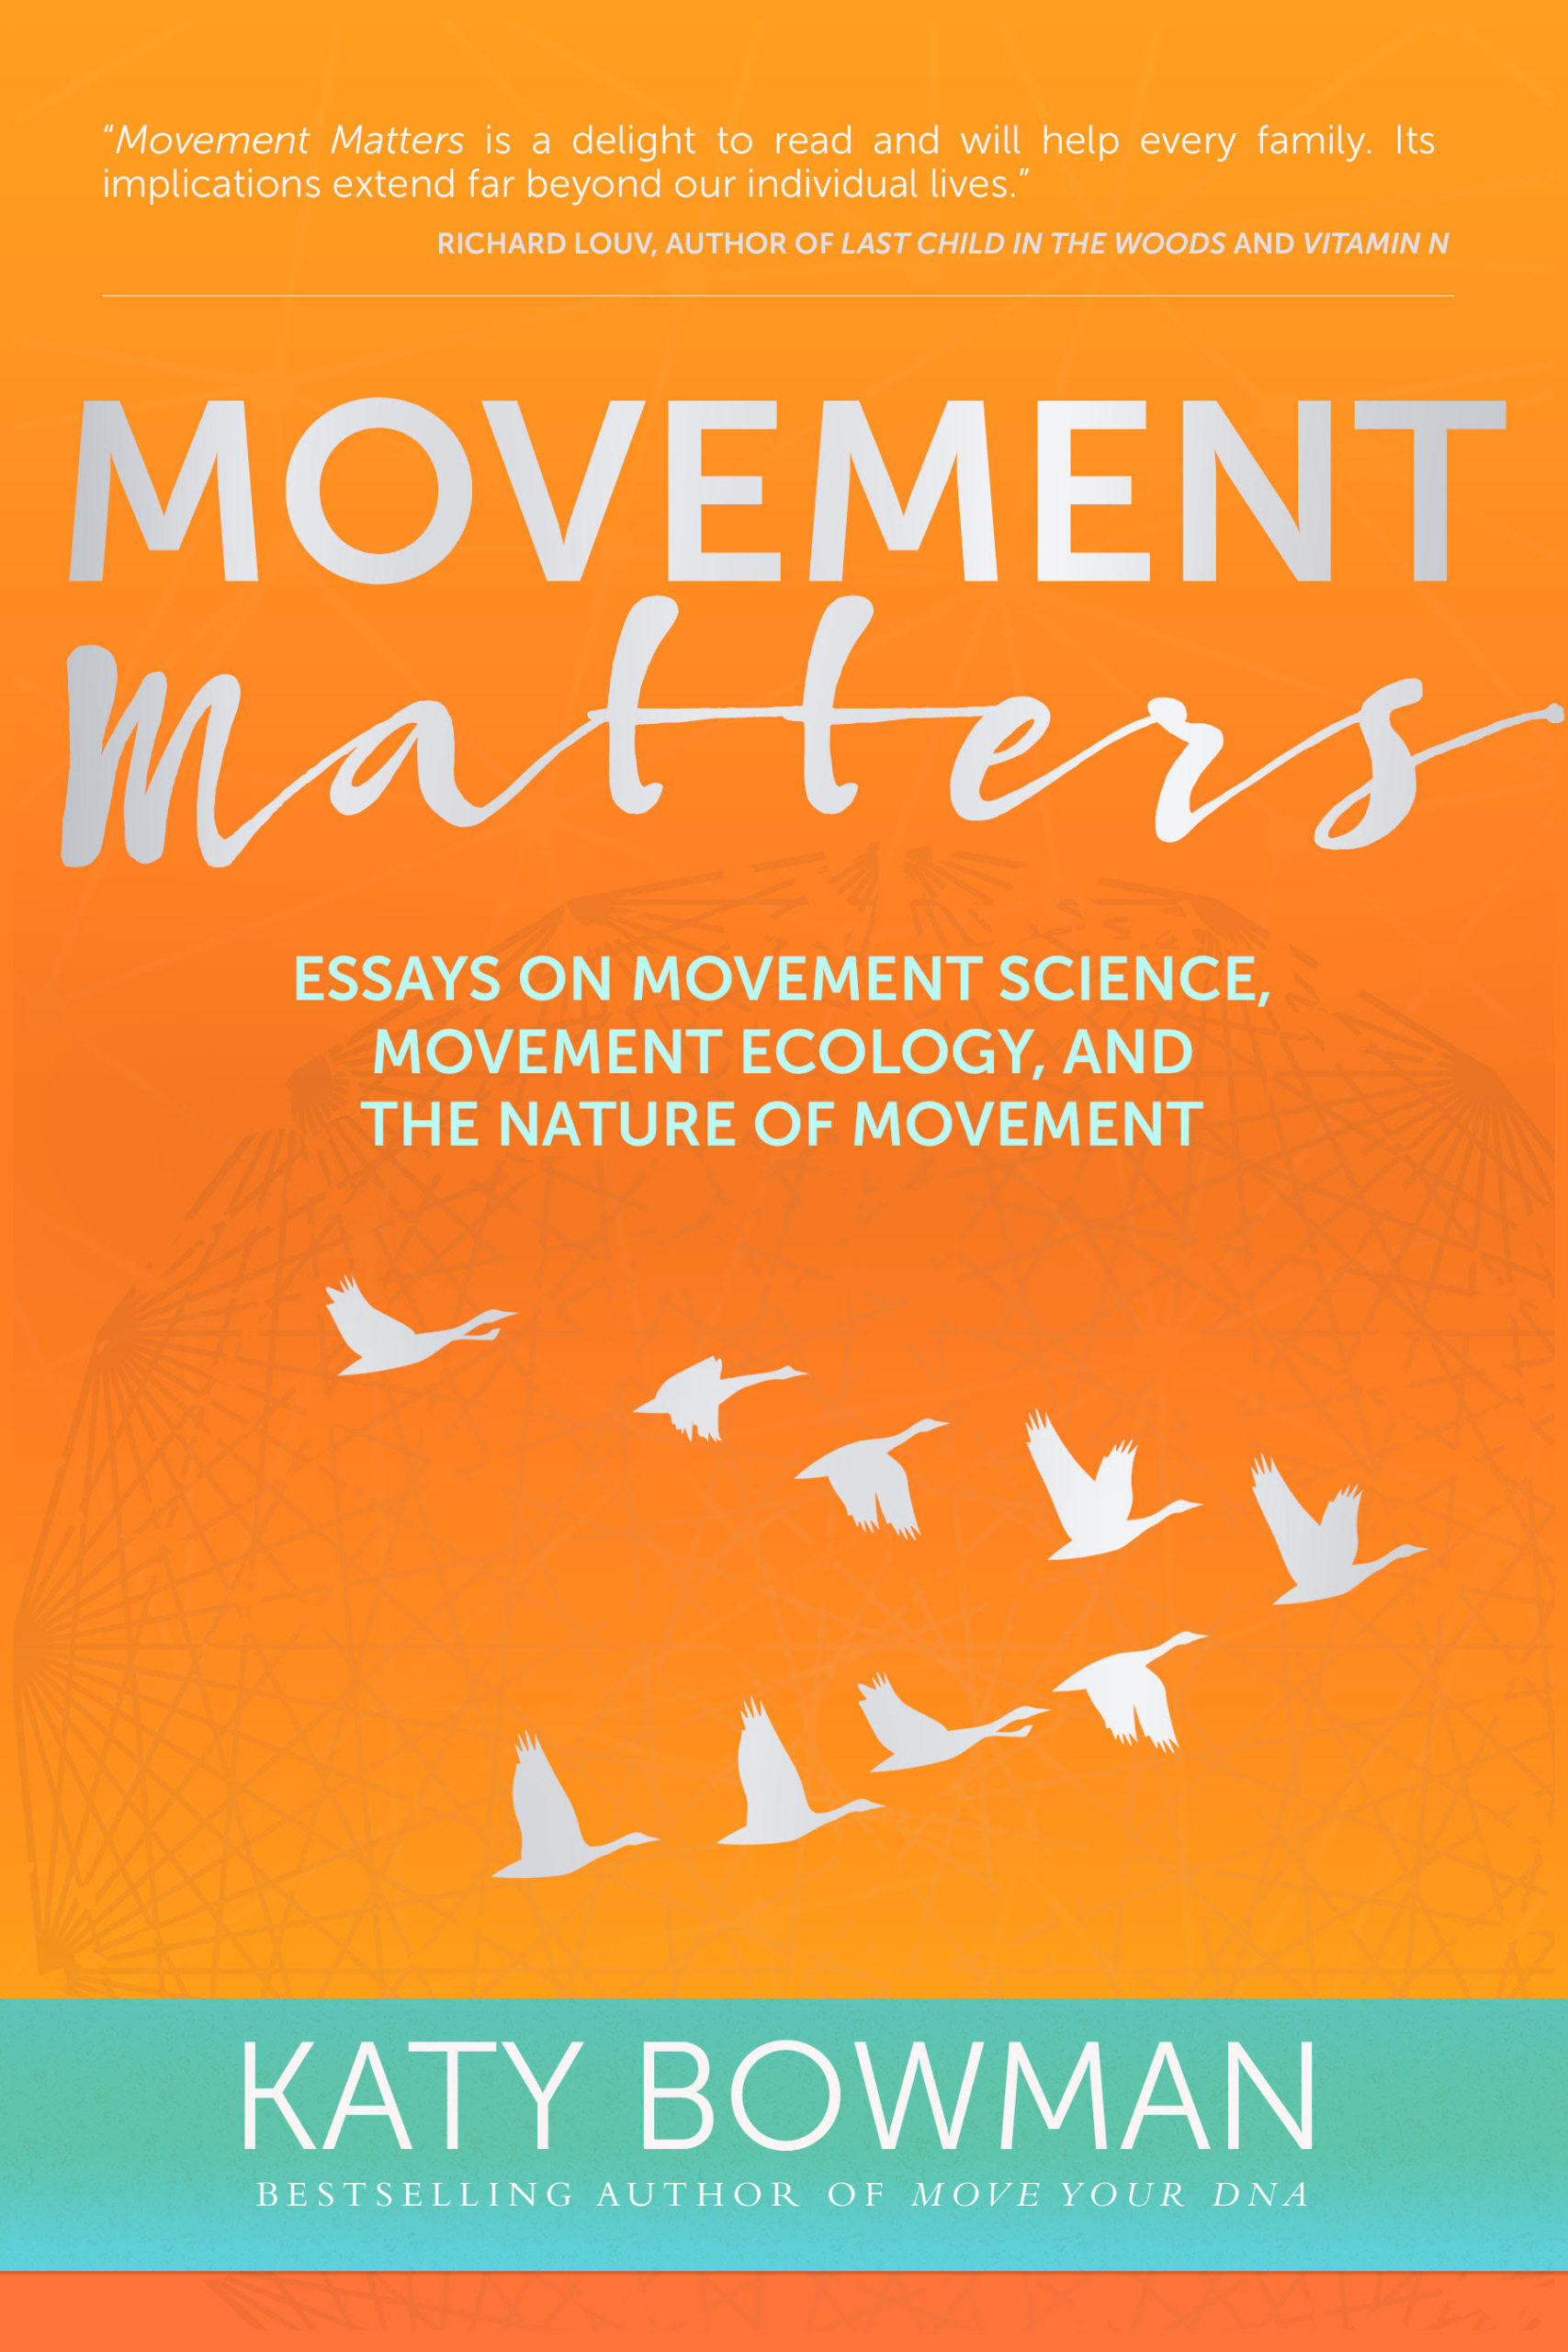 Katy Bowman – Movement Matters